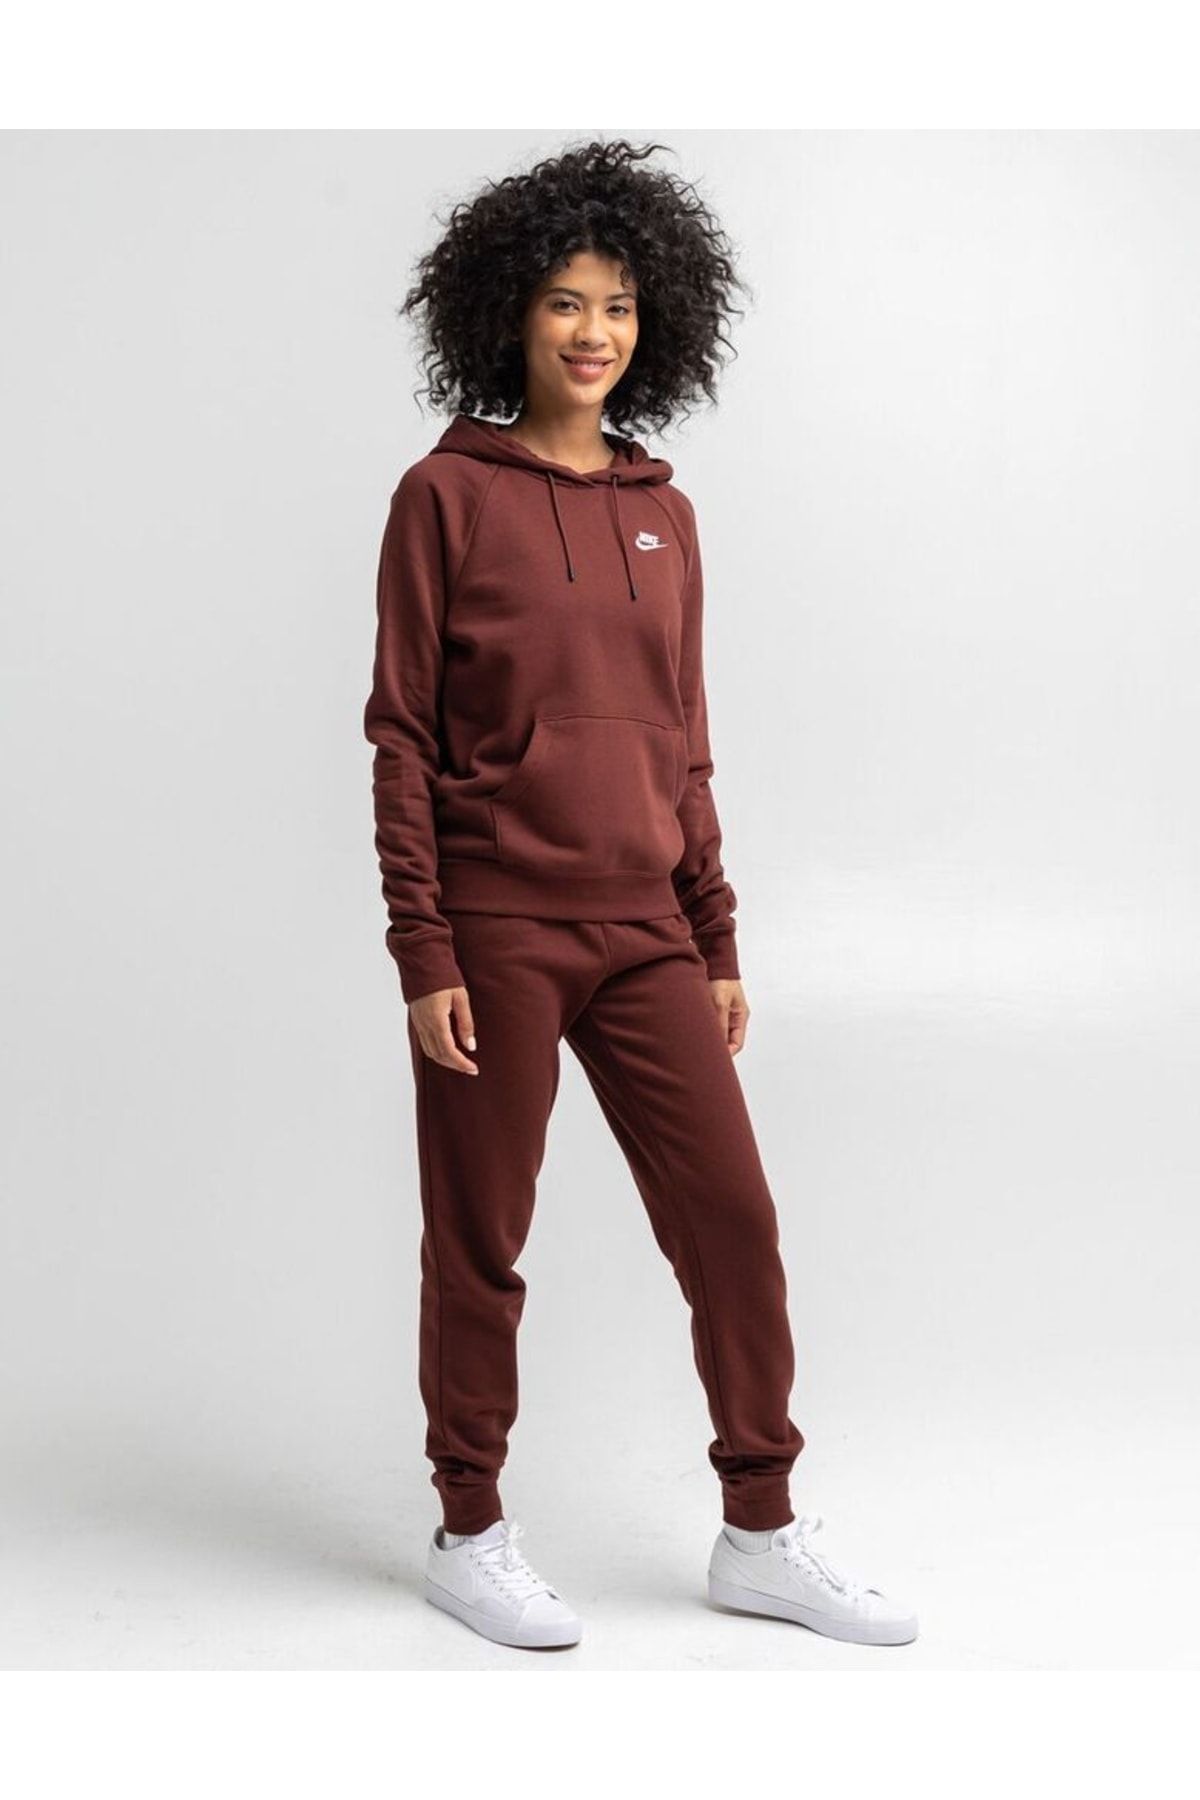 Nike Sportswear Essential Women's Fleece Hoodie Preto BV4124-010